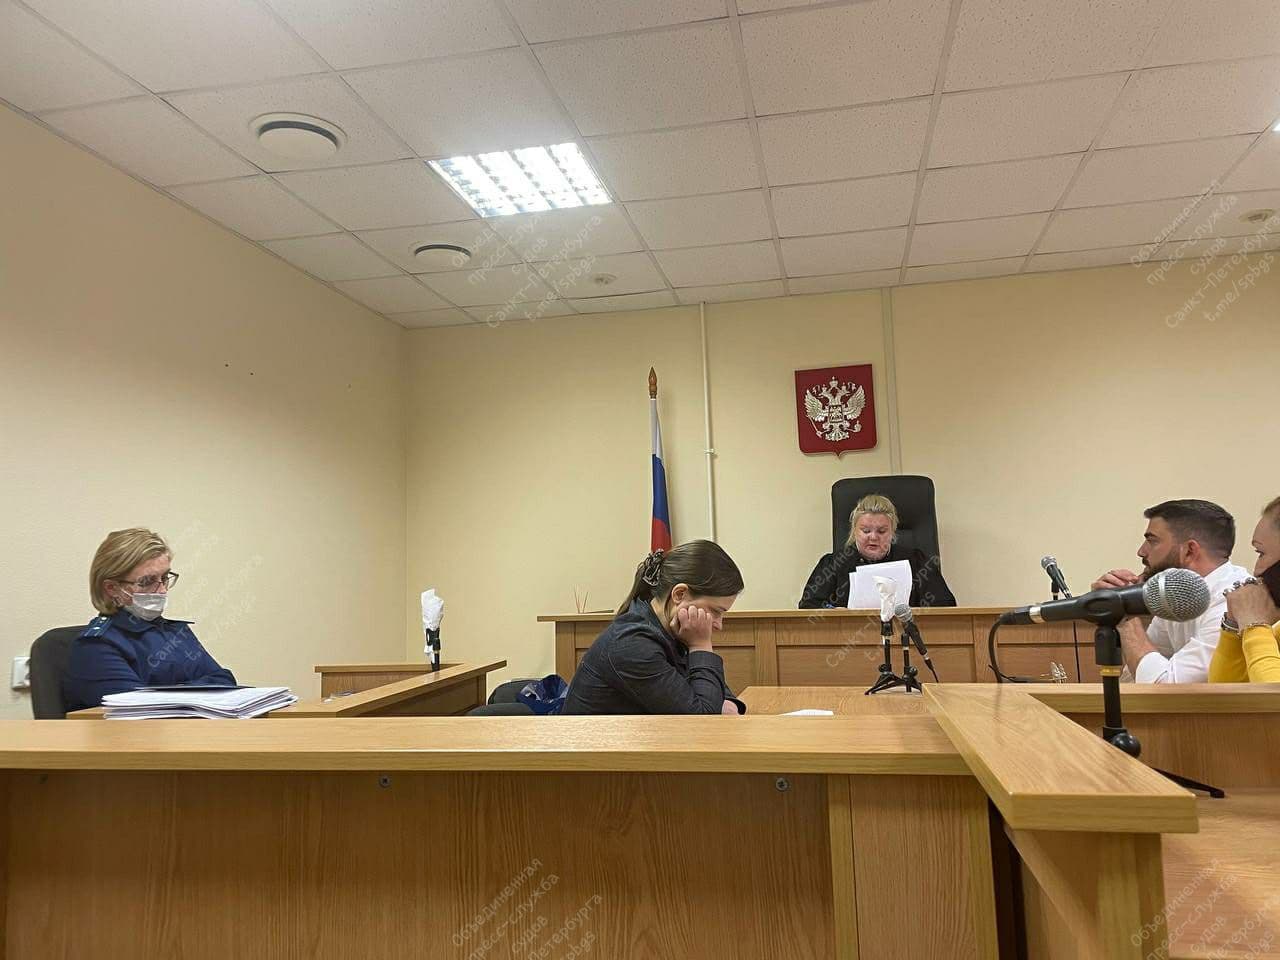 Суд в Петербурге арестовал «юриста» из переулка. От ее «услуг» пострадали пенсионеры